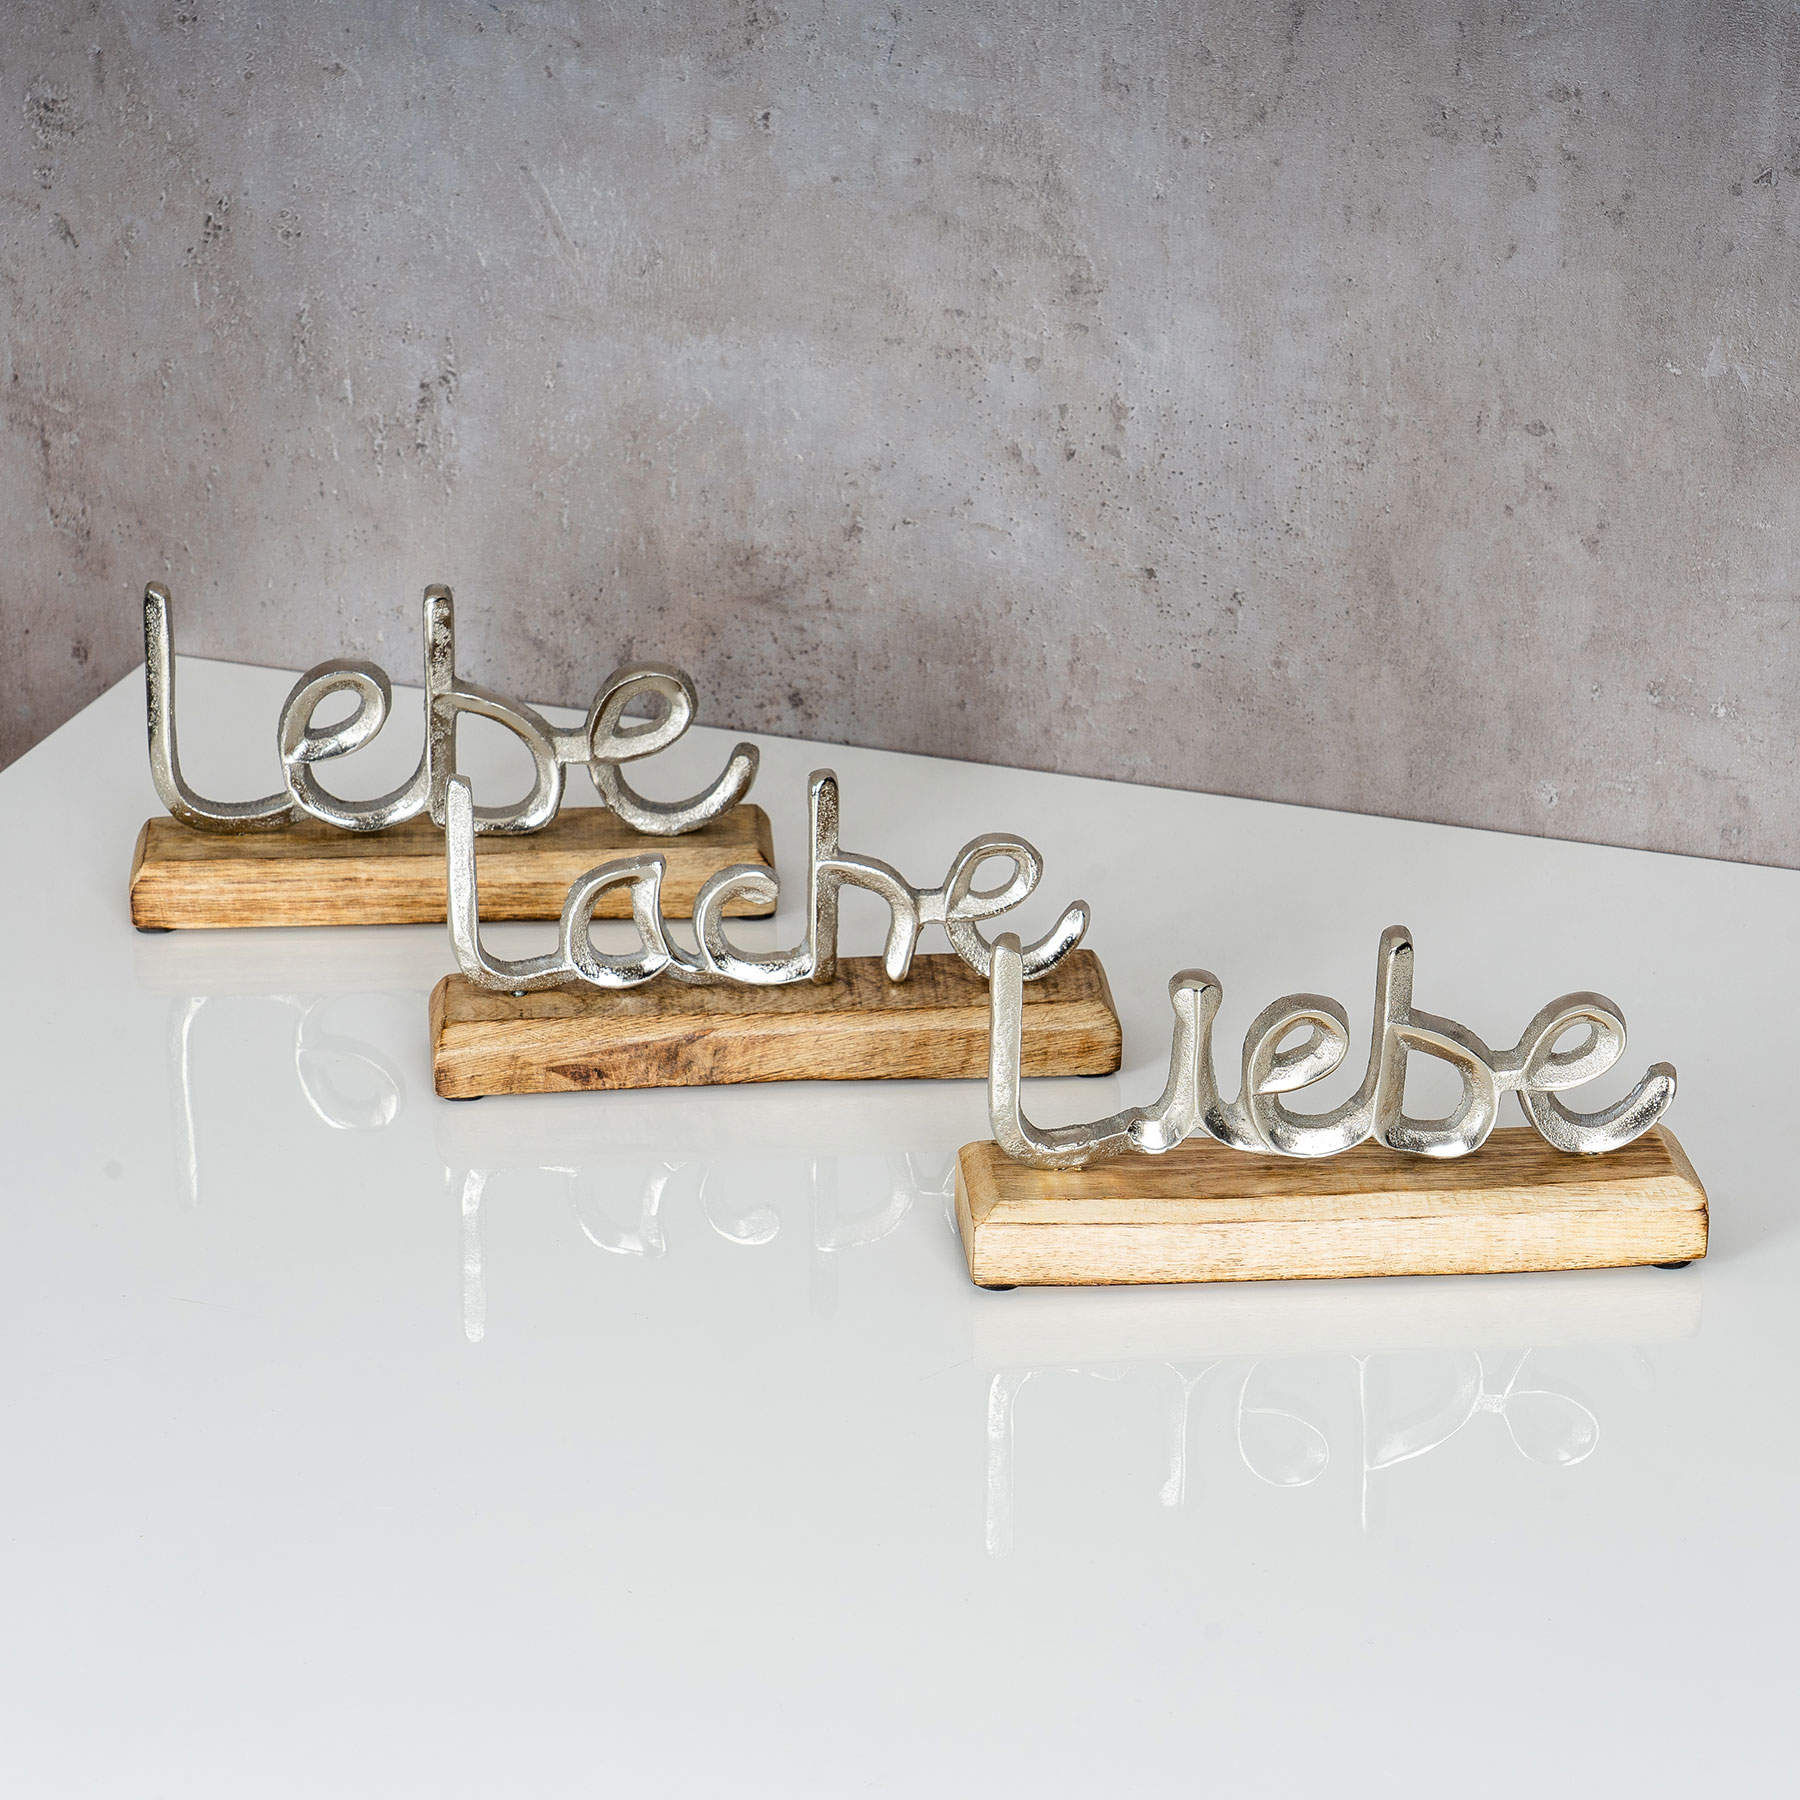 3er Set Schriftzug Lebe Mango Metall Holz Deko L23cm Silber Liebe Lache